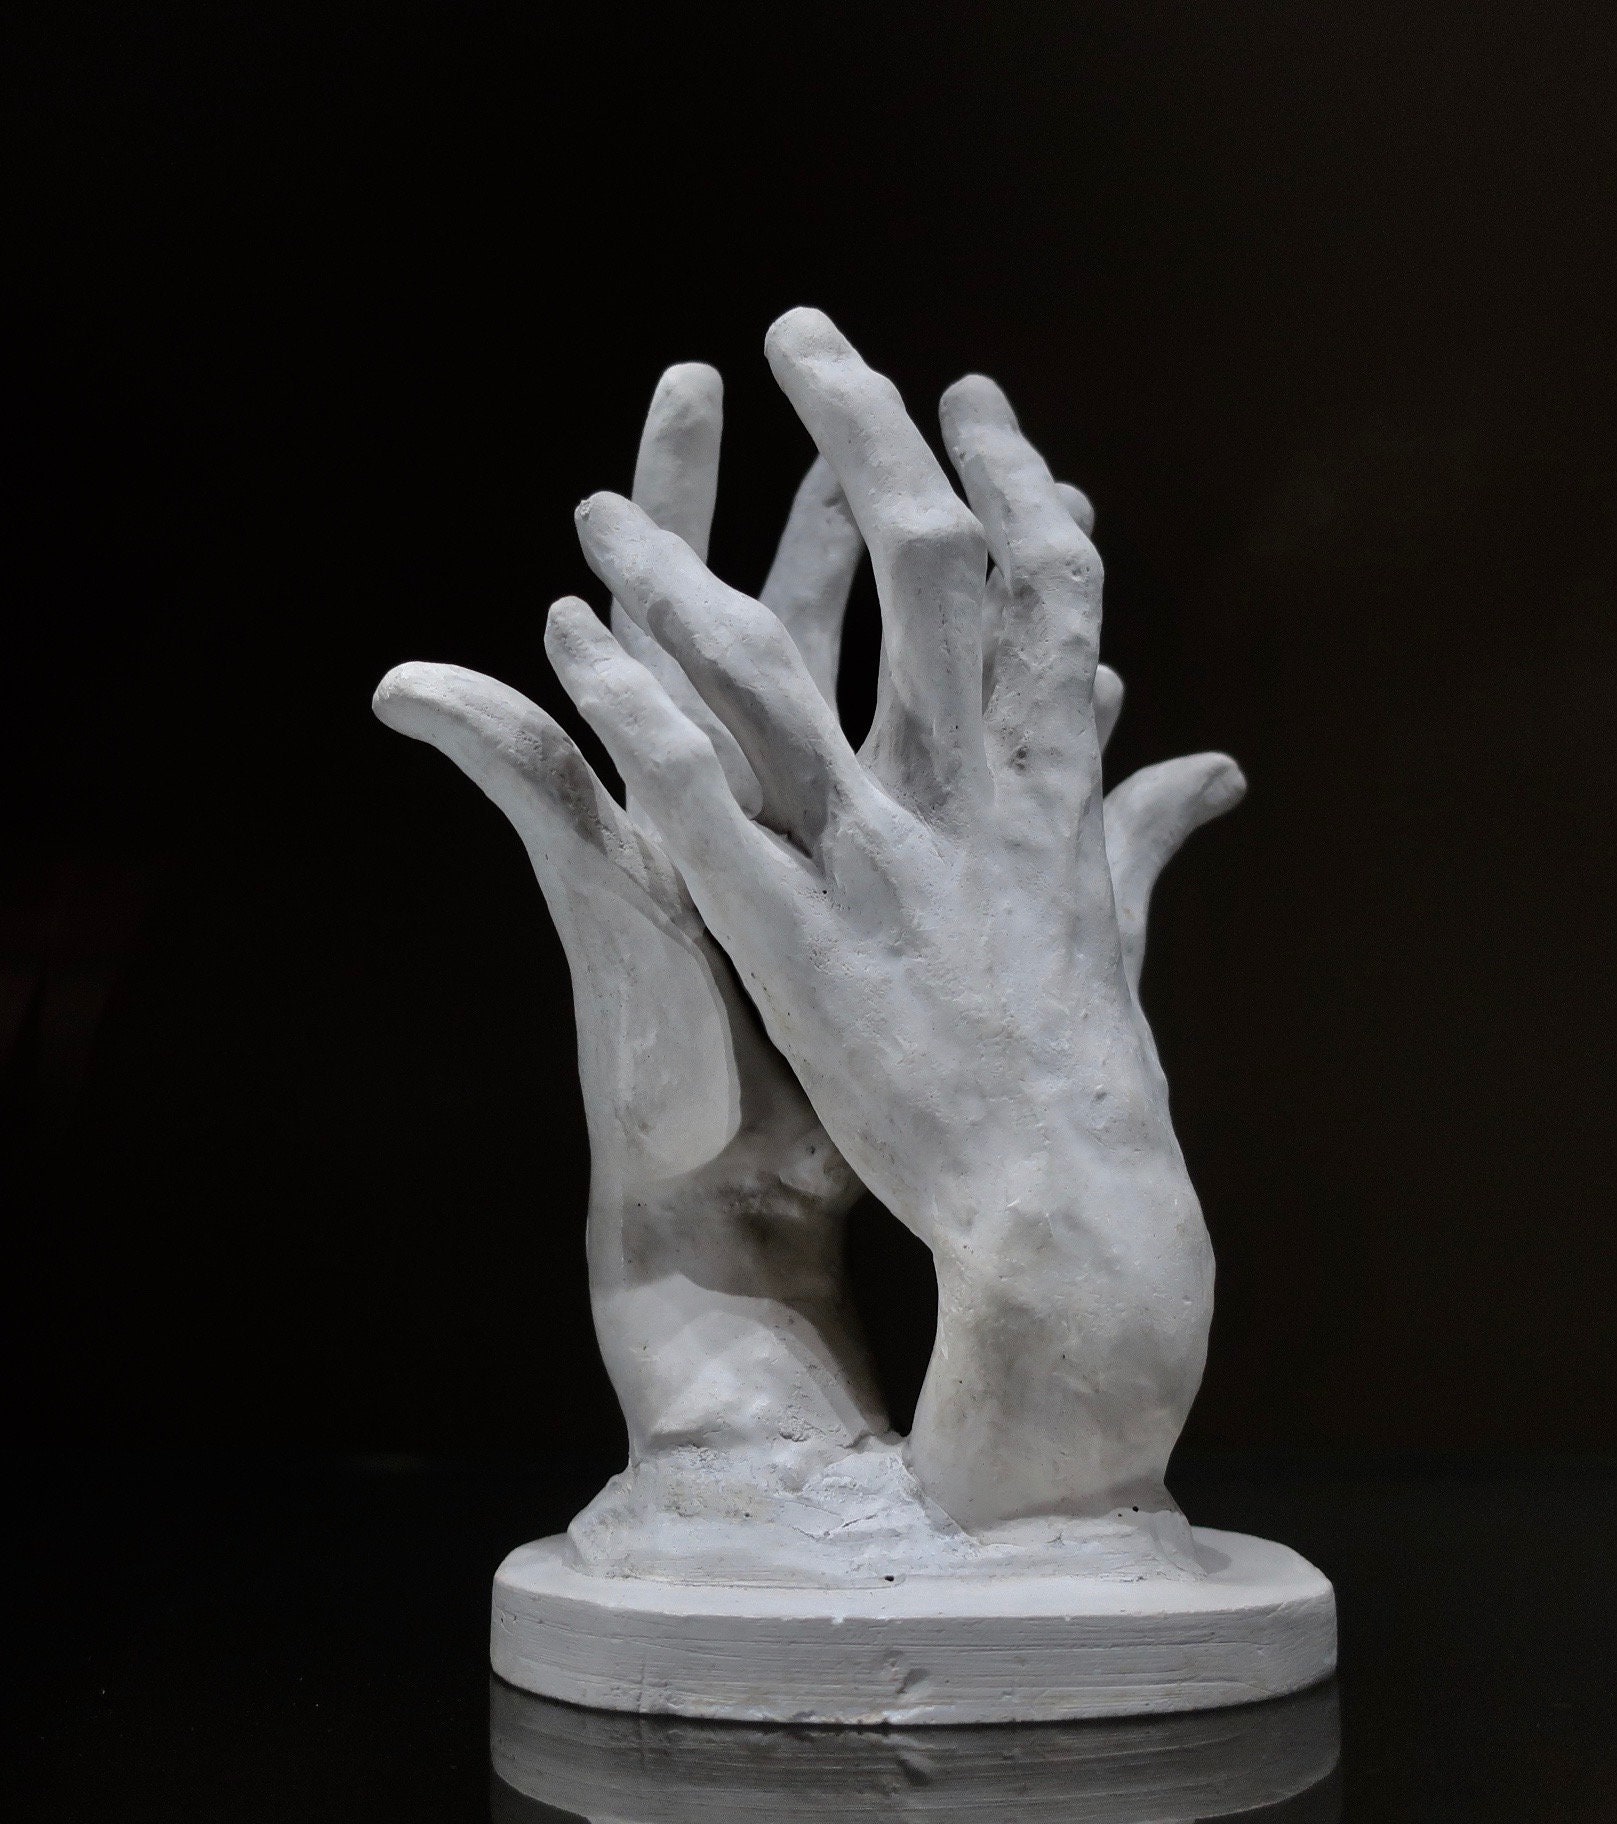 Hand Sculpture Photograph